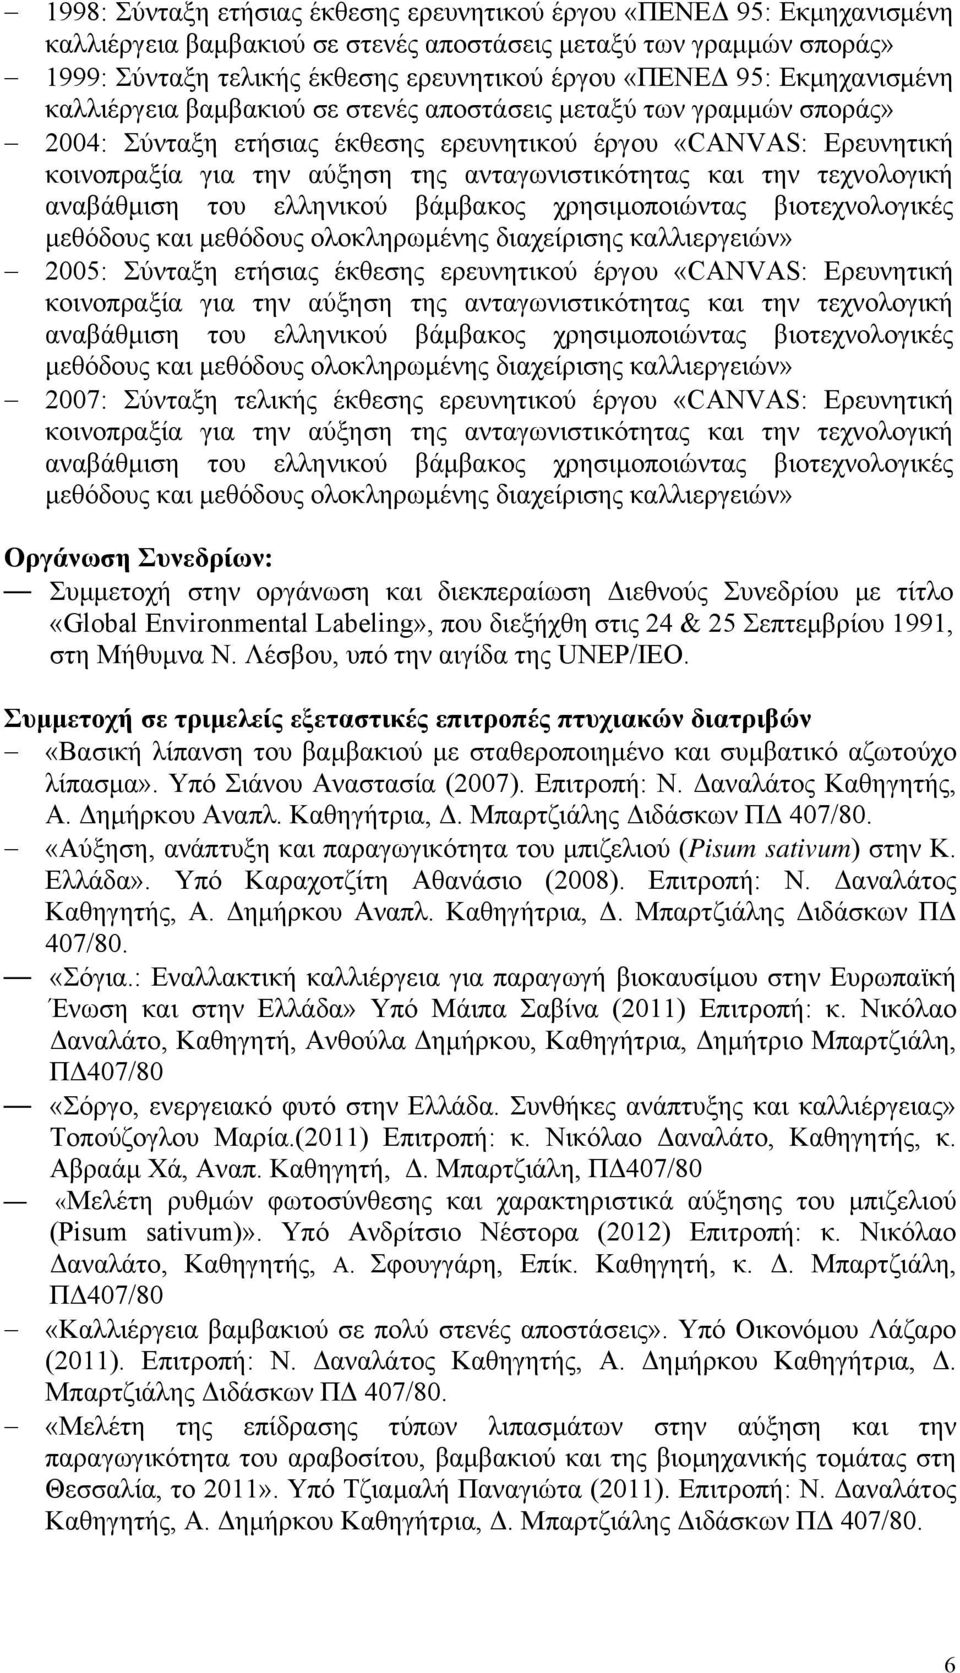 ανταγωνιστικότητας και την τεχνολογική αναβάθμιση του ελληνικού βάμβακος χρησιμοποιώντας βιοτεχνολογικές μεθόδους και μεθόδους ολοκληρωμένης διαχείρισης καλλιεργειών» 2005: Σύνταξη ετήσιας έκθεσης